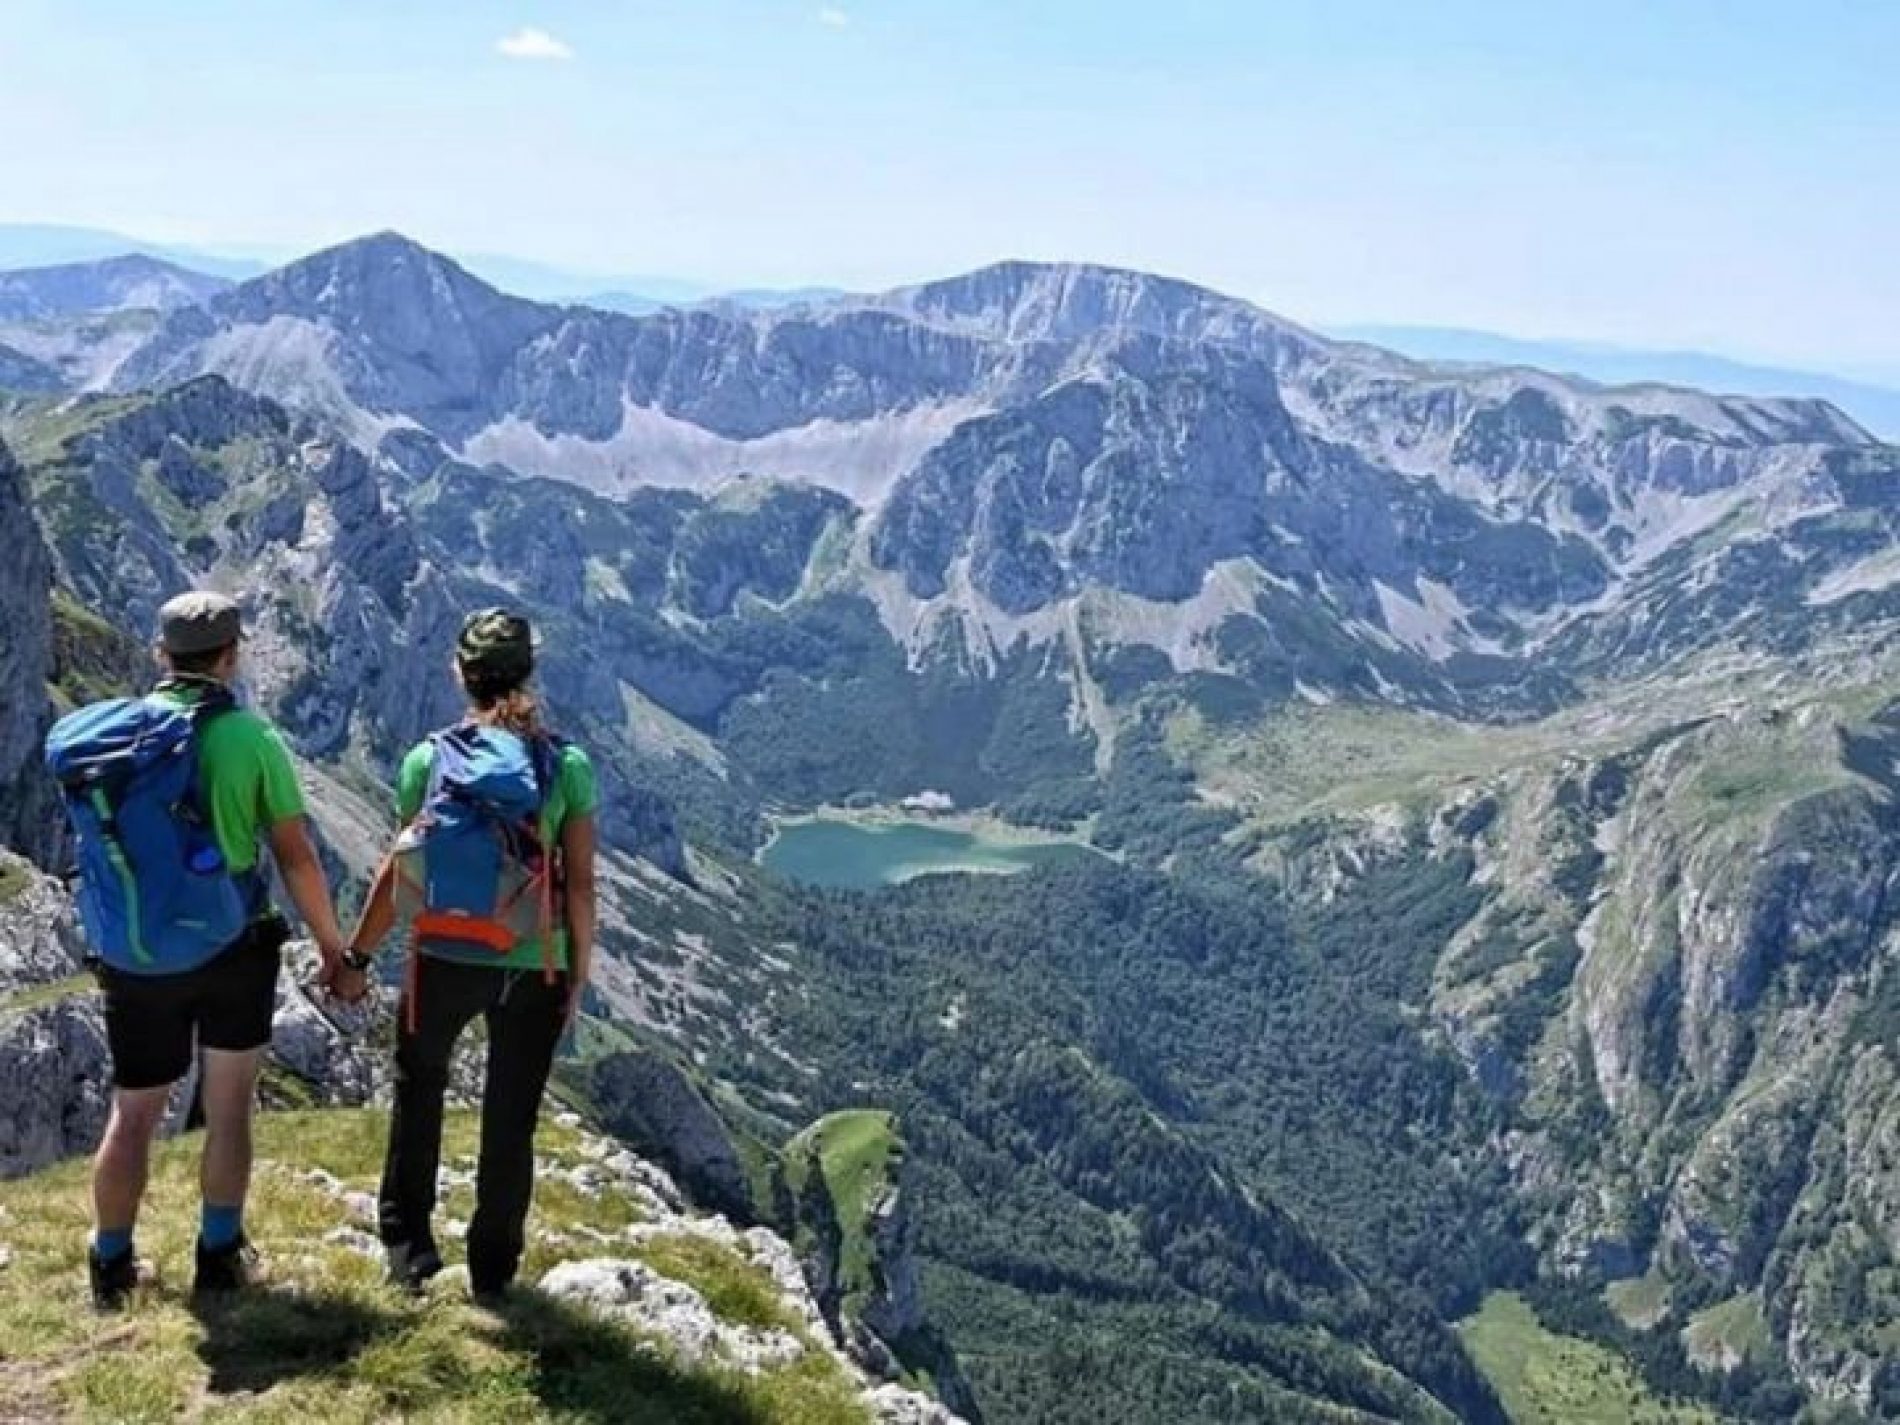 Turizam u Bosni i Hercegovini čini 9,7 posto BDP-a, u Crnoj Gori ima daleko veći značaj